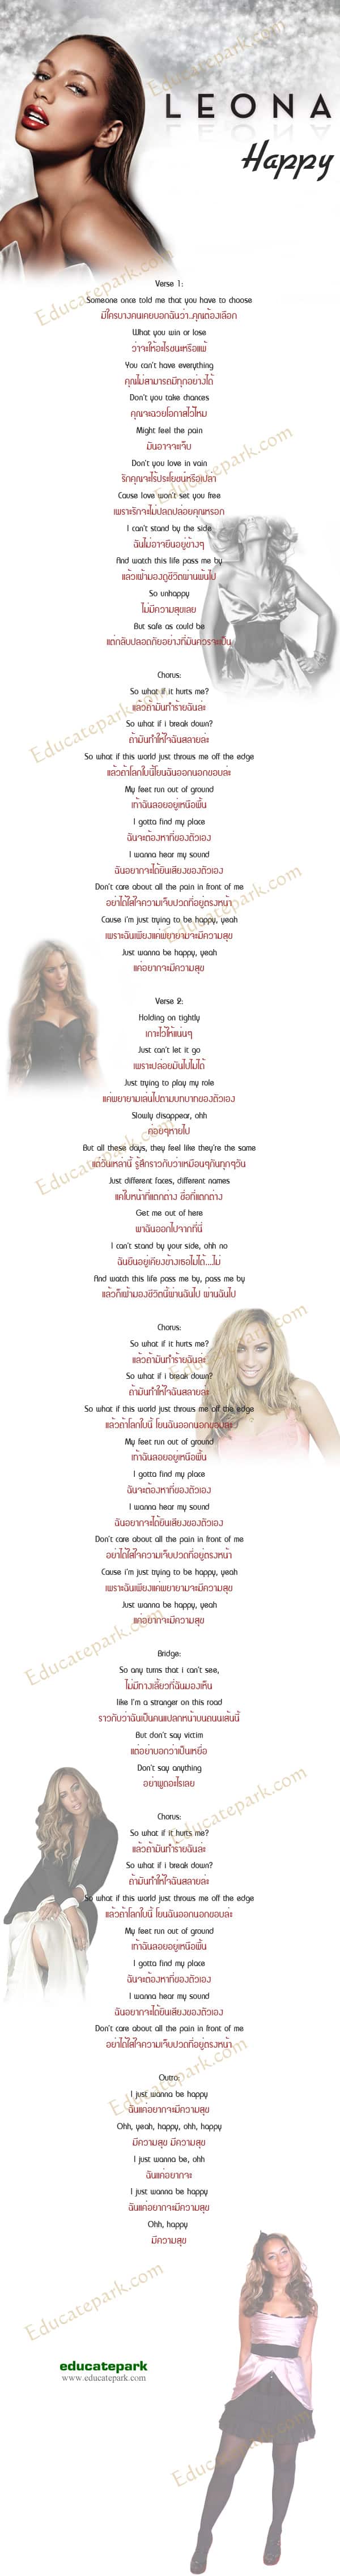 แปลเพลง Happy - Leona Lewis